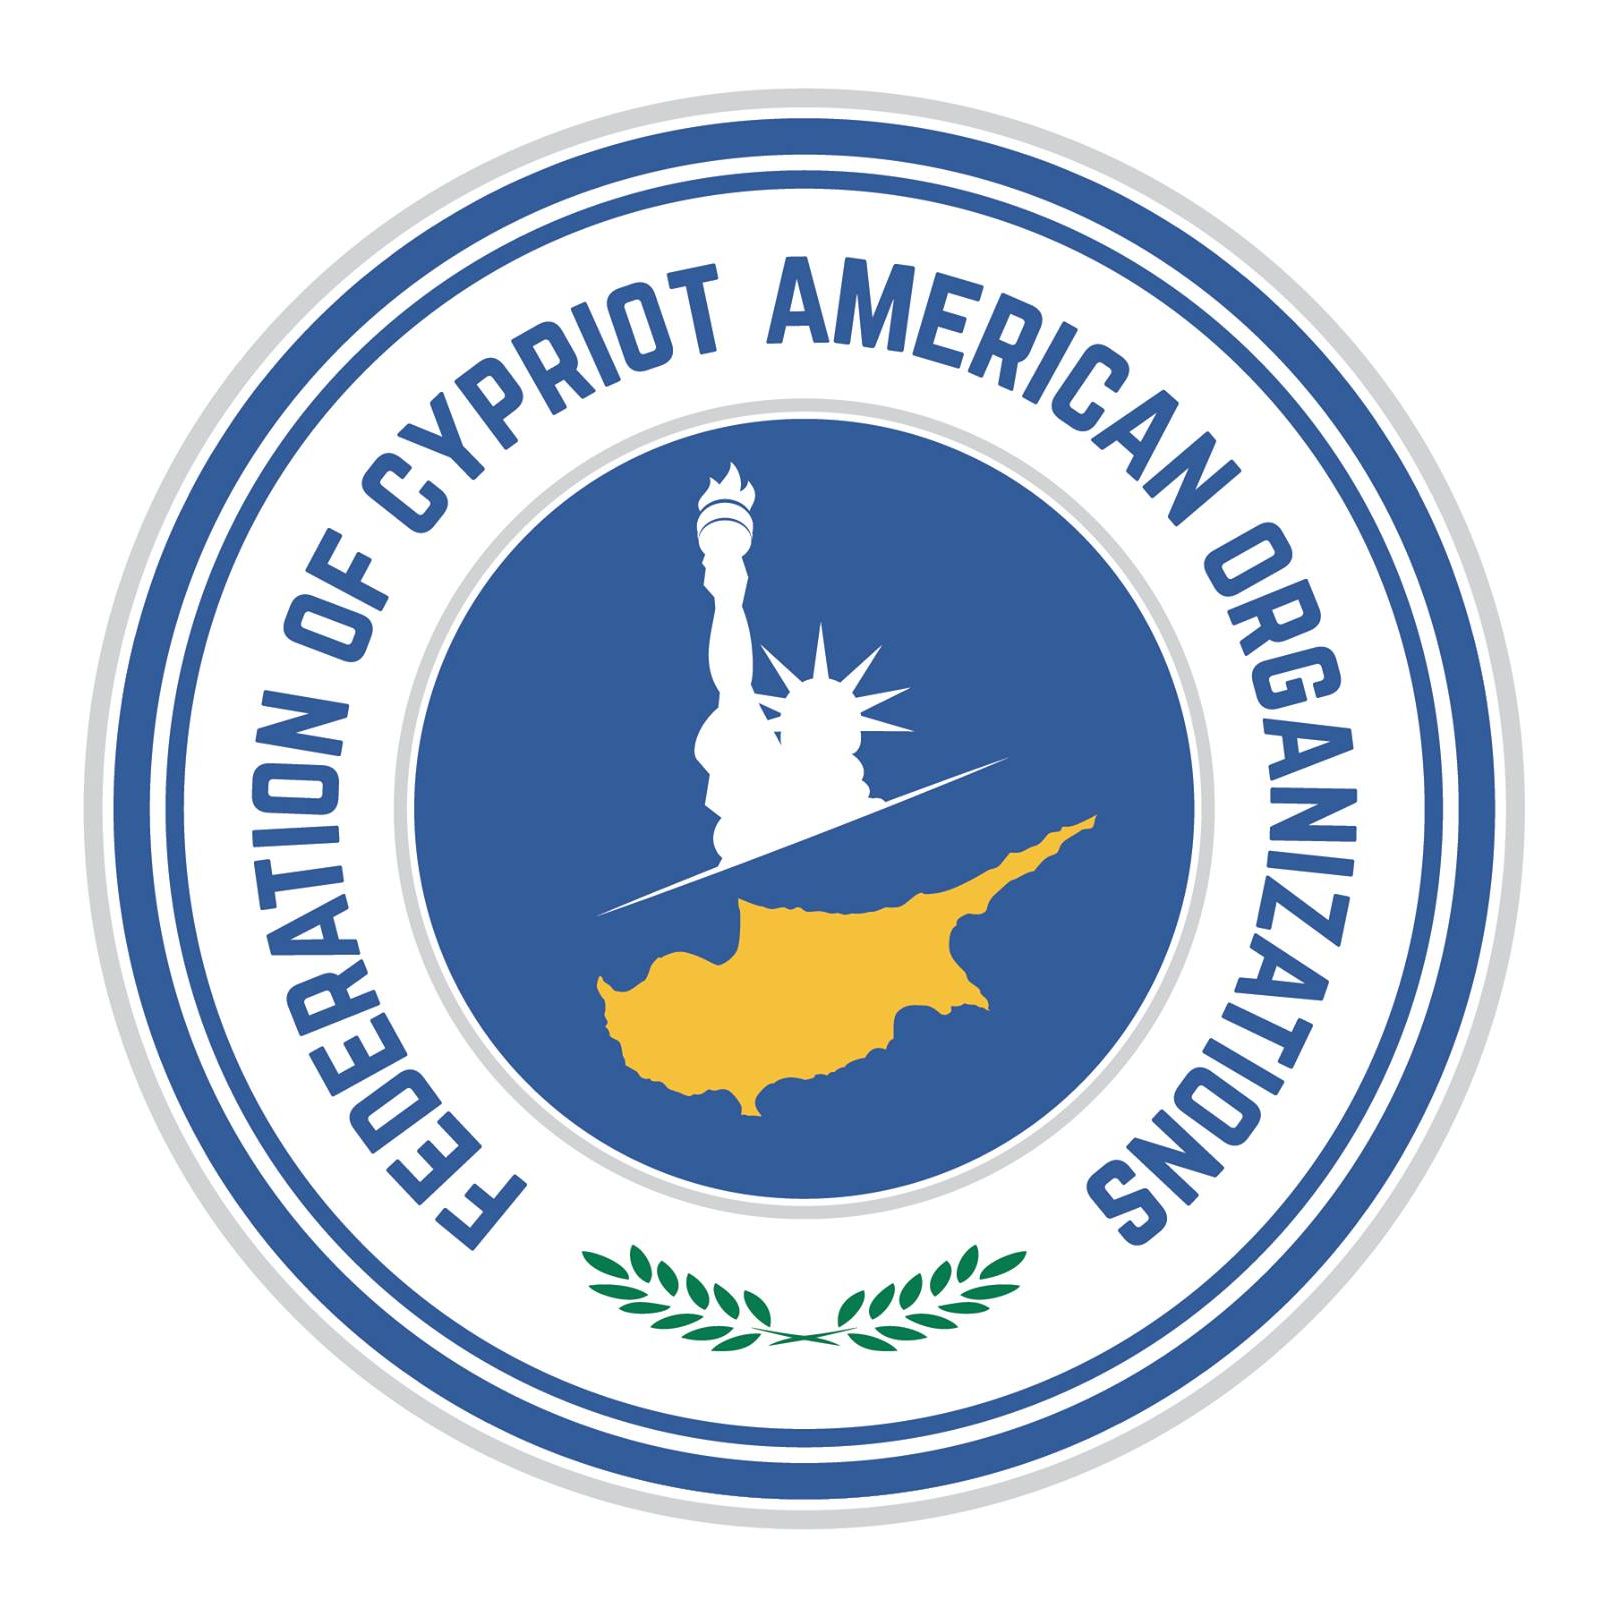 Greek Organization in New York - Federation of Cypriot American Organizations